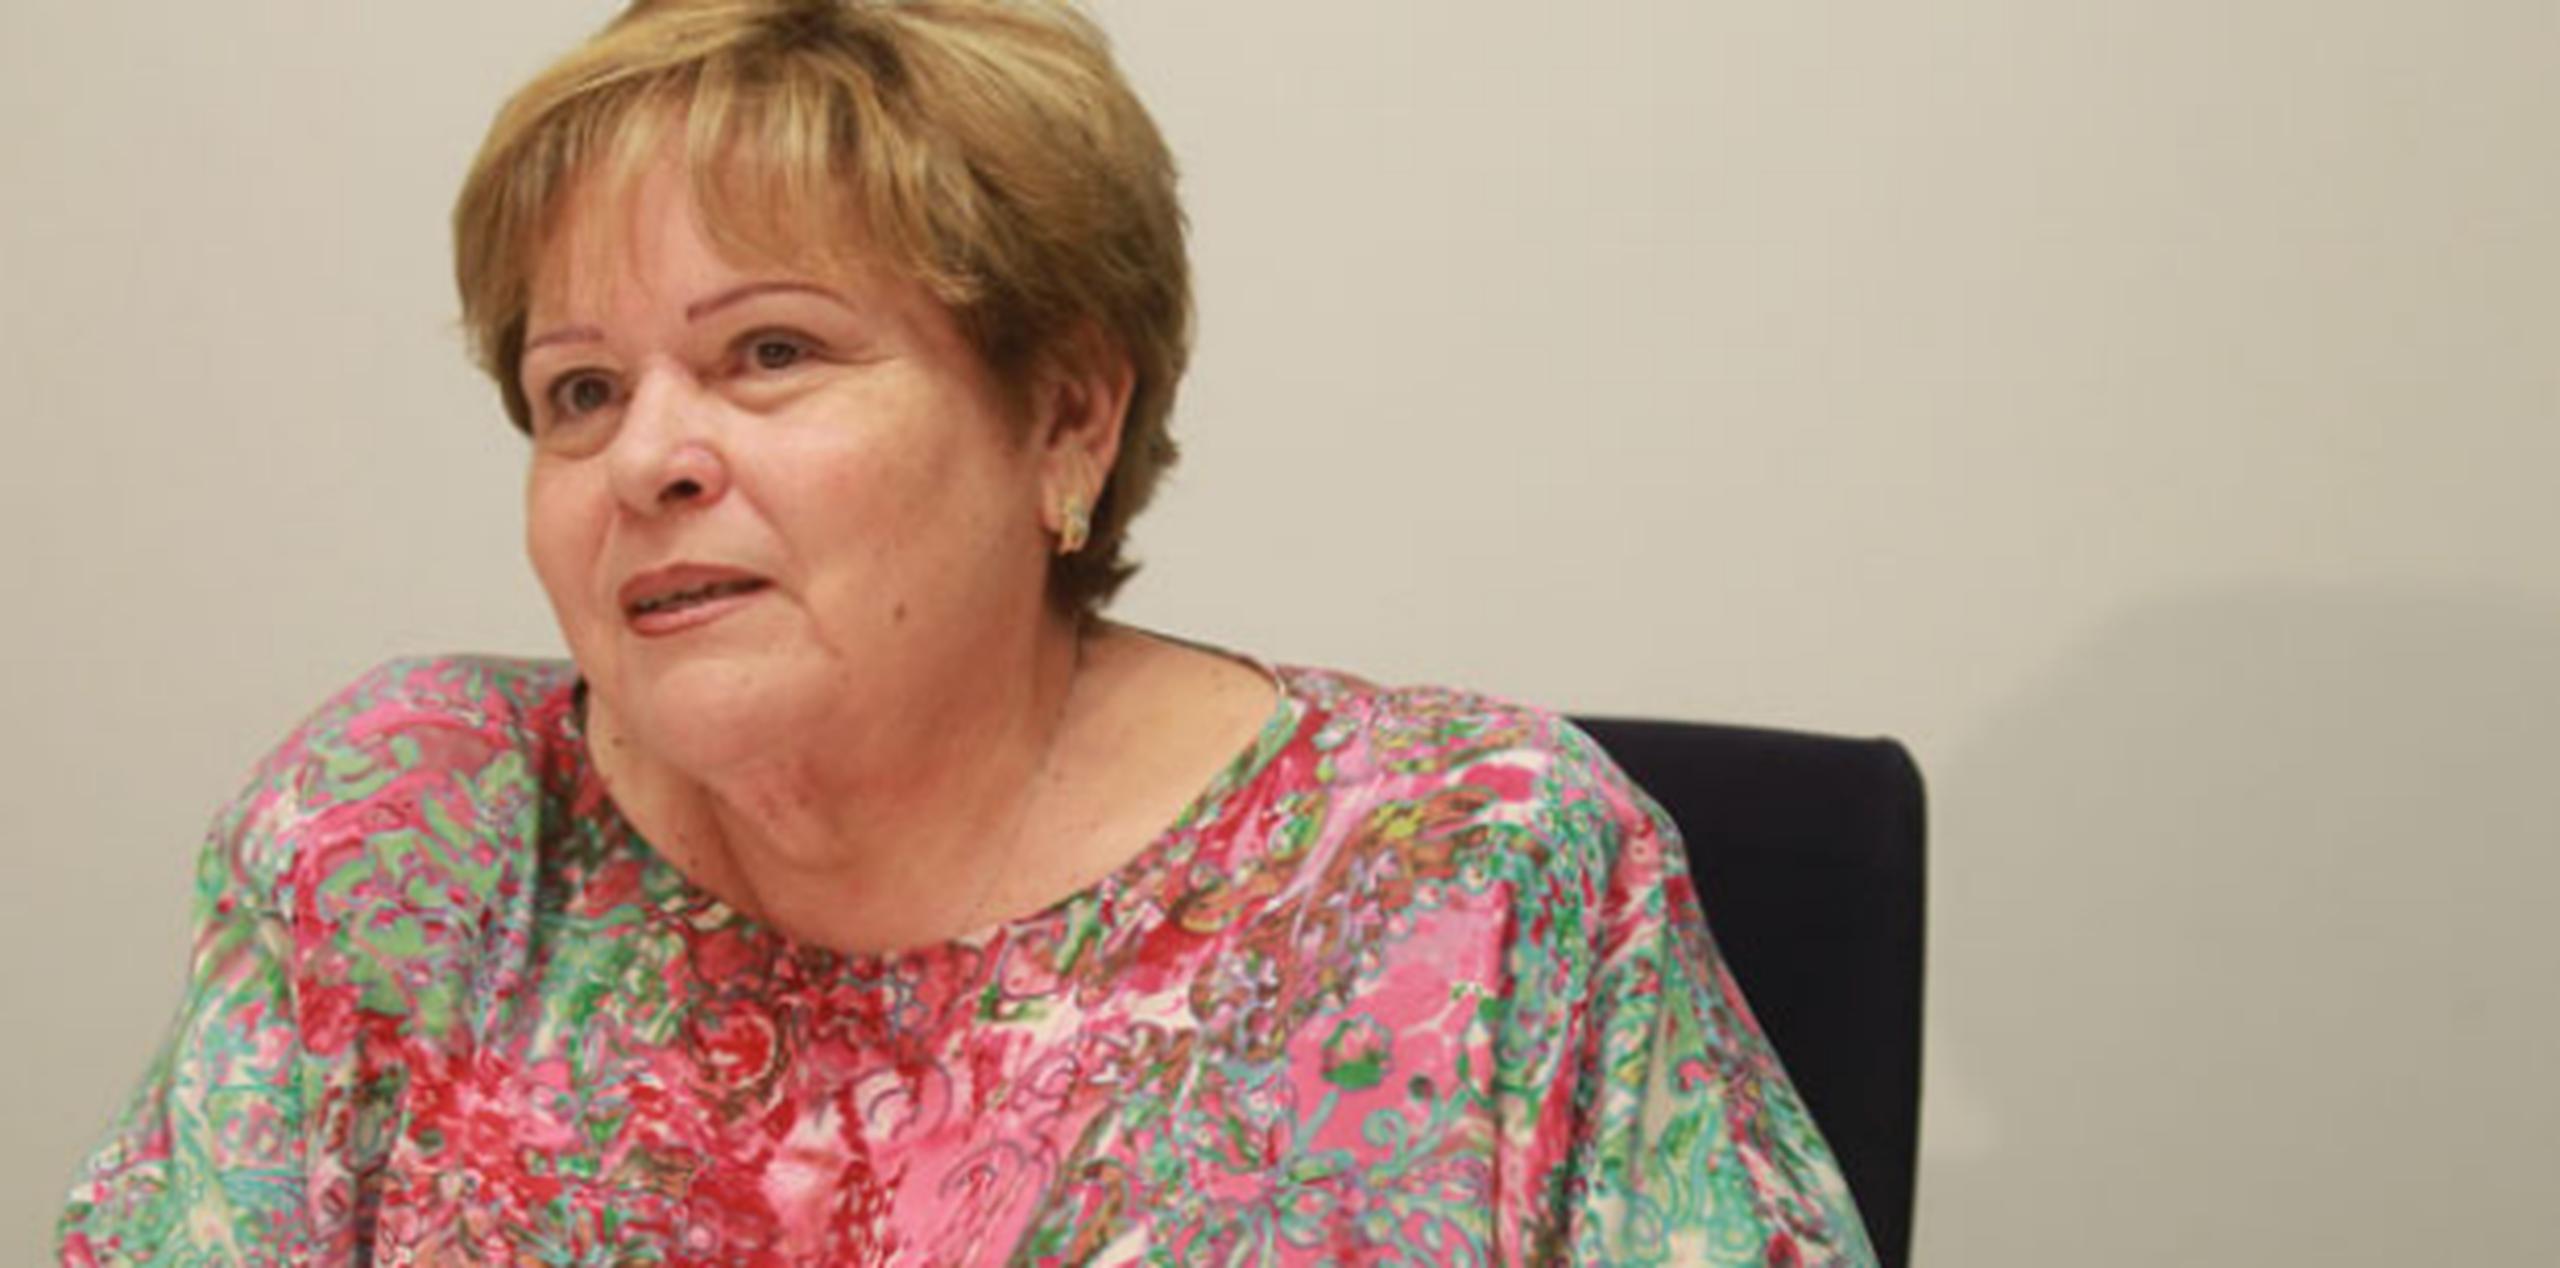 La presidenta de la Asociación de Maestros, Aida Díaz, anticipó que próximamente someterá la solicitud para que se efectúe la elección sindical. (Archivo)